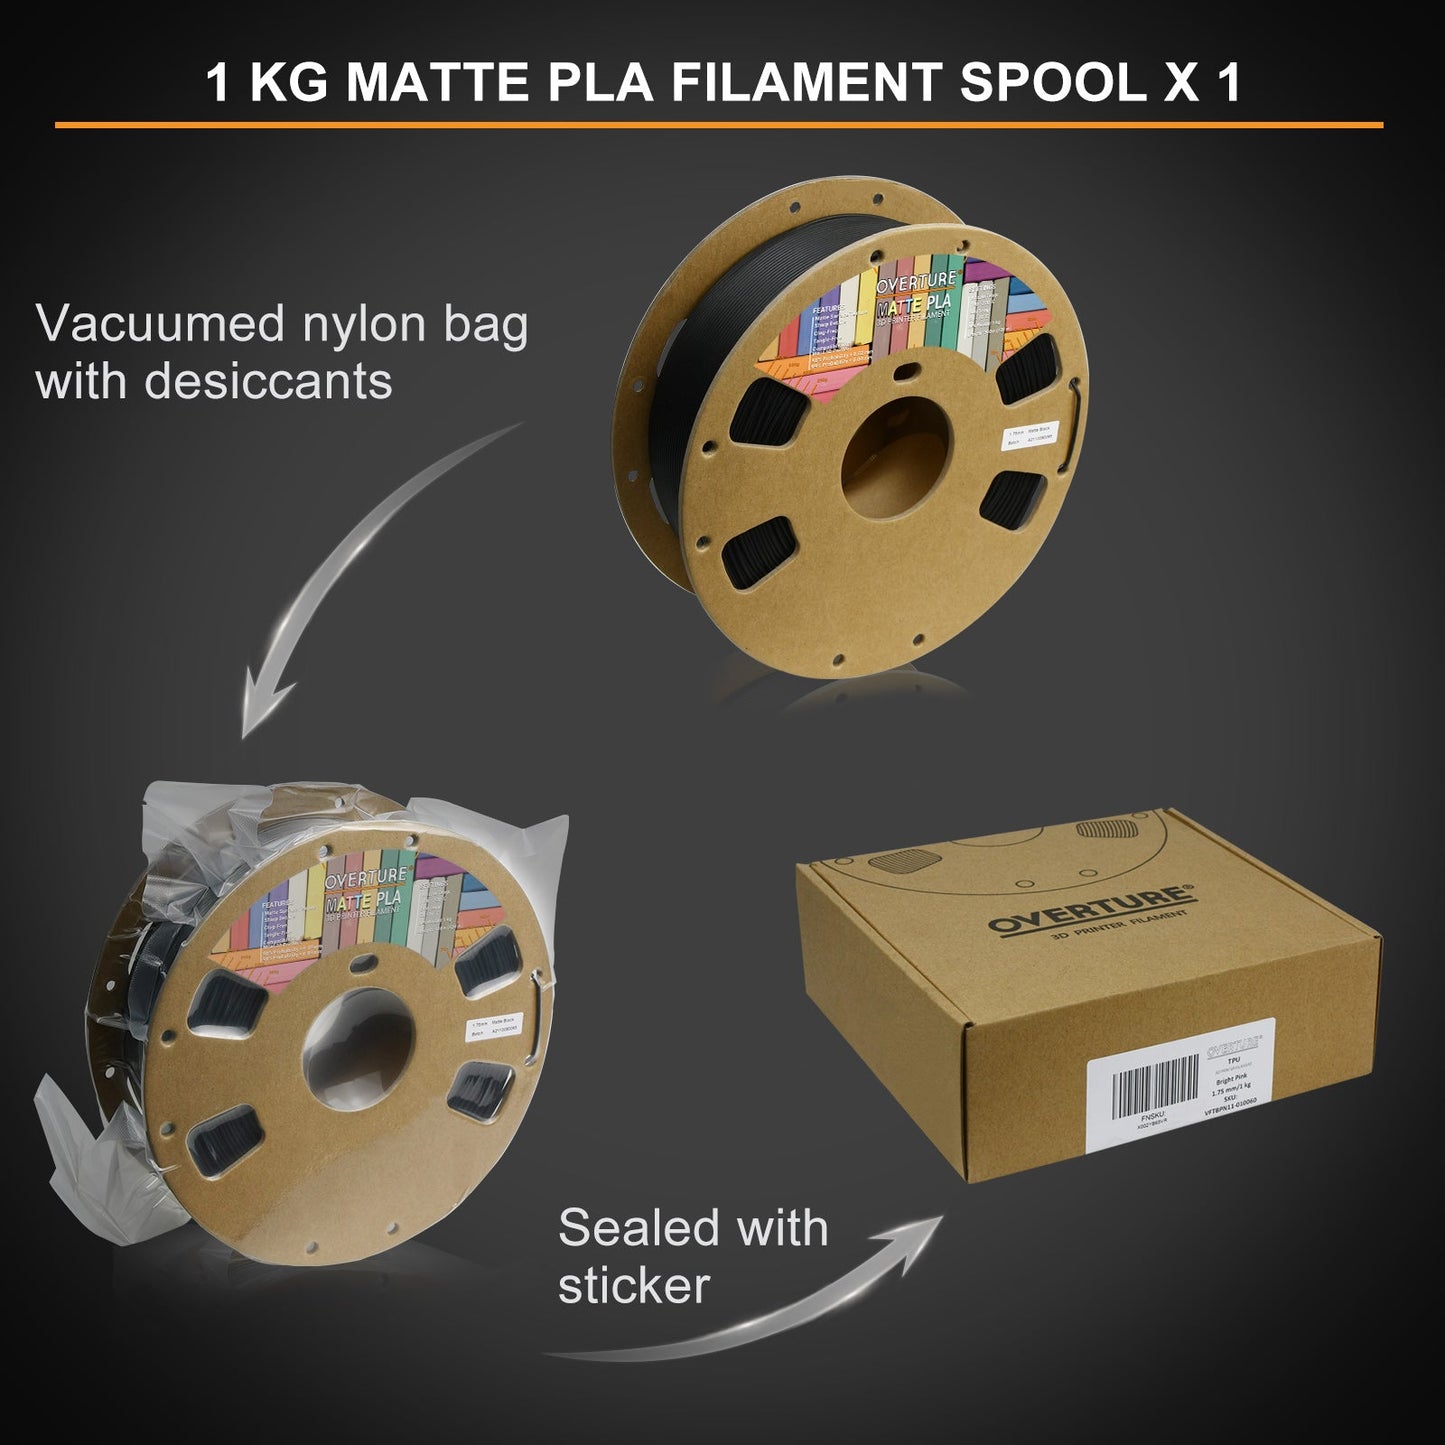 Overture Matte PLA Filament 1.75mm - Overture 3D